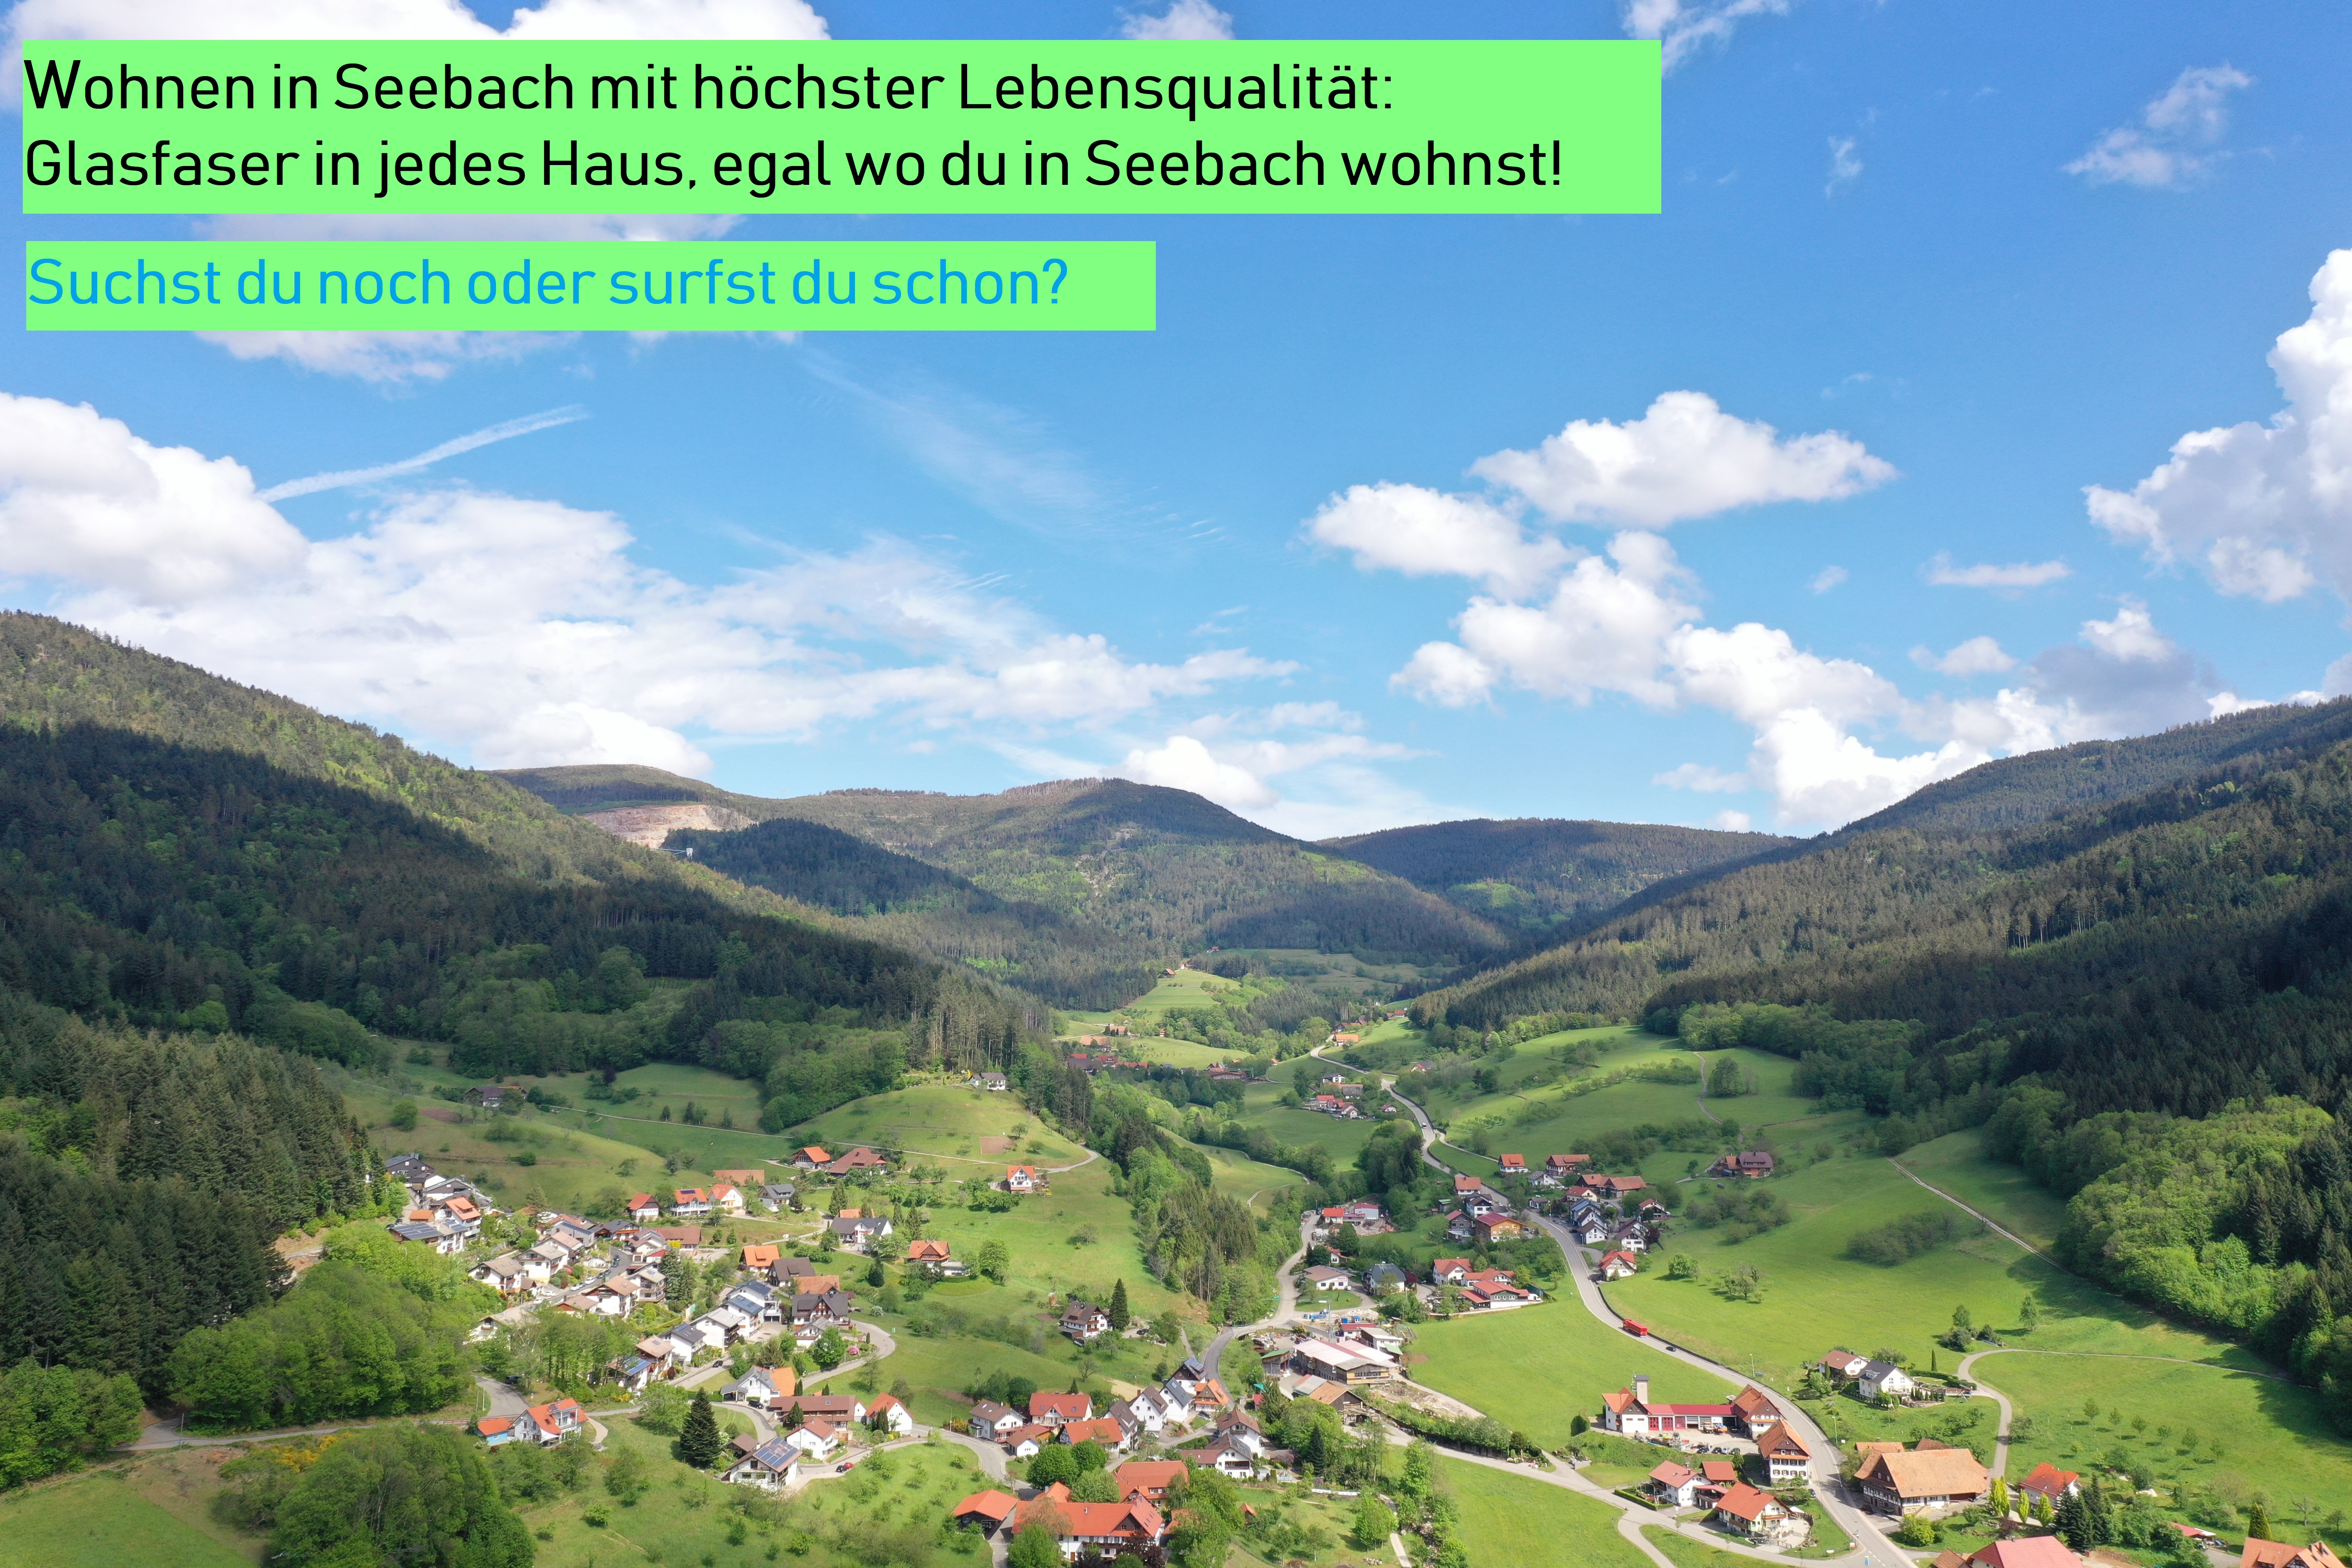                                                     Wohnen in Seebach mit höchster Lebensqualität: Glasfaser in jedes Haus, egal wo du in Seebach wohnst! Suchst du noch oder surfst du schon?                                    